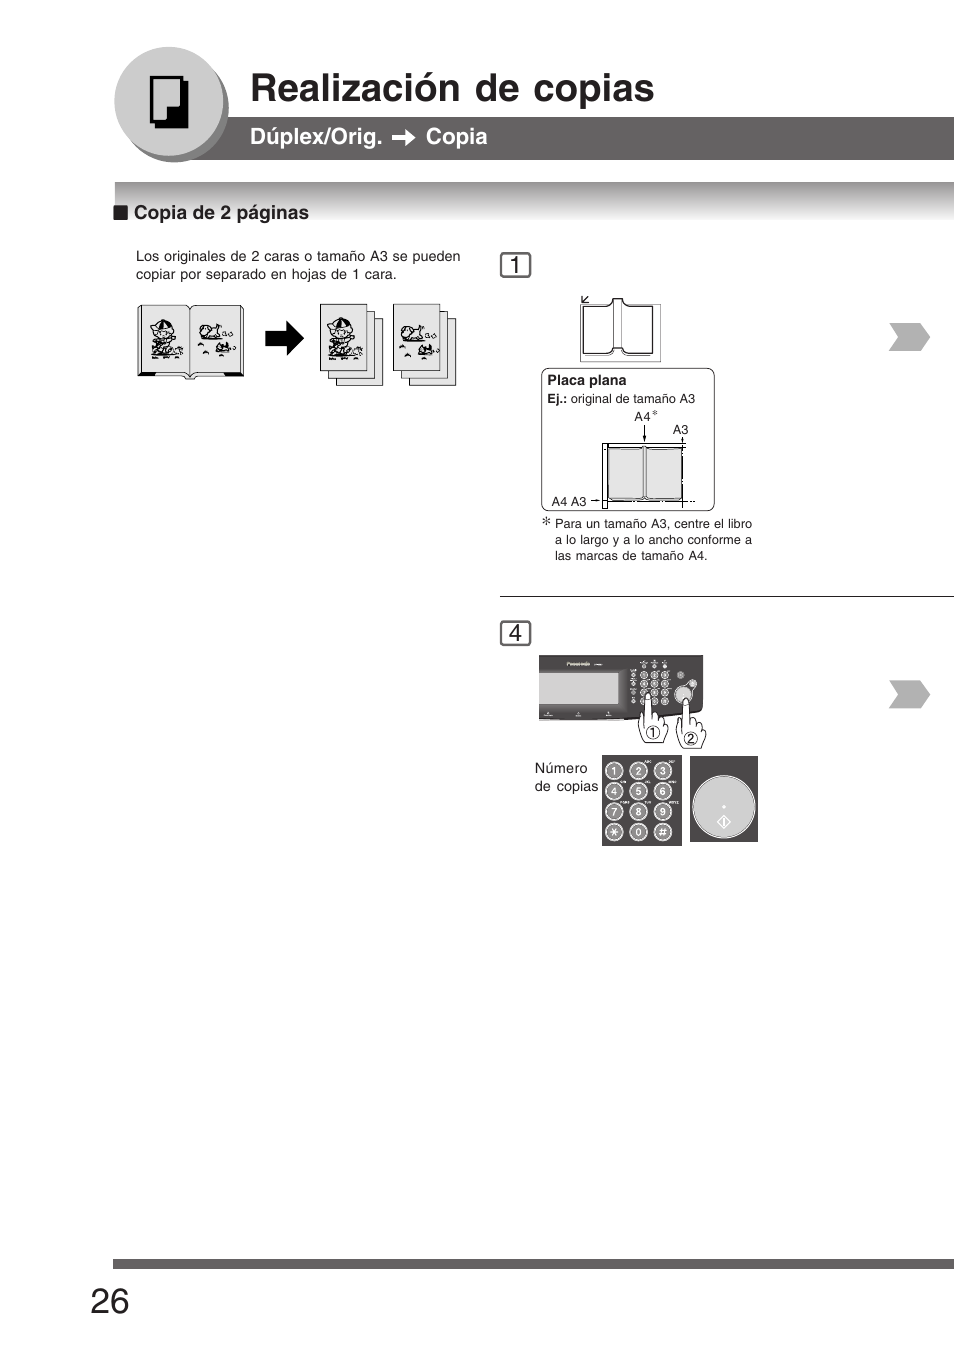 Realización de copias | Panasonic DP8035 Manual del usuario | Página 26 / 92